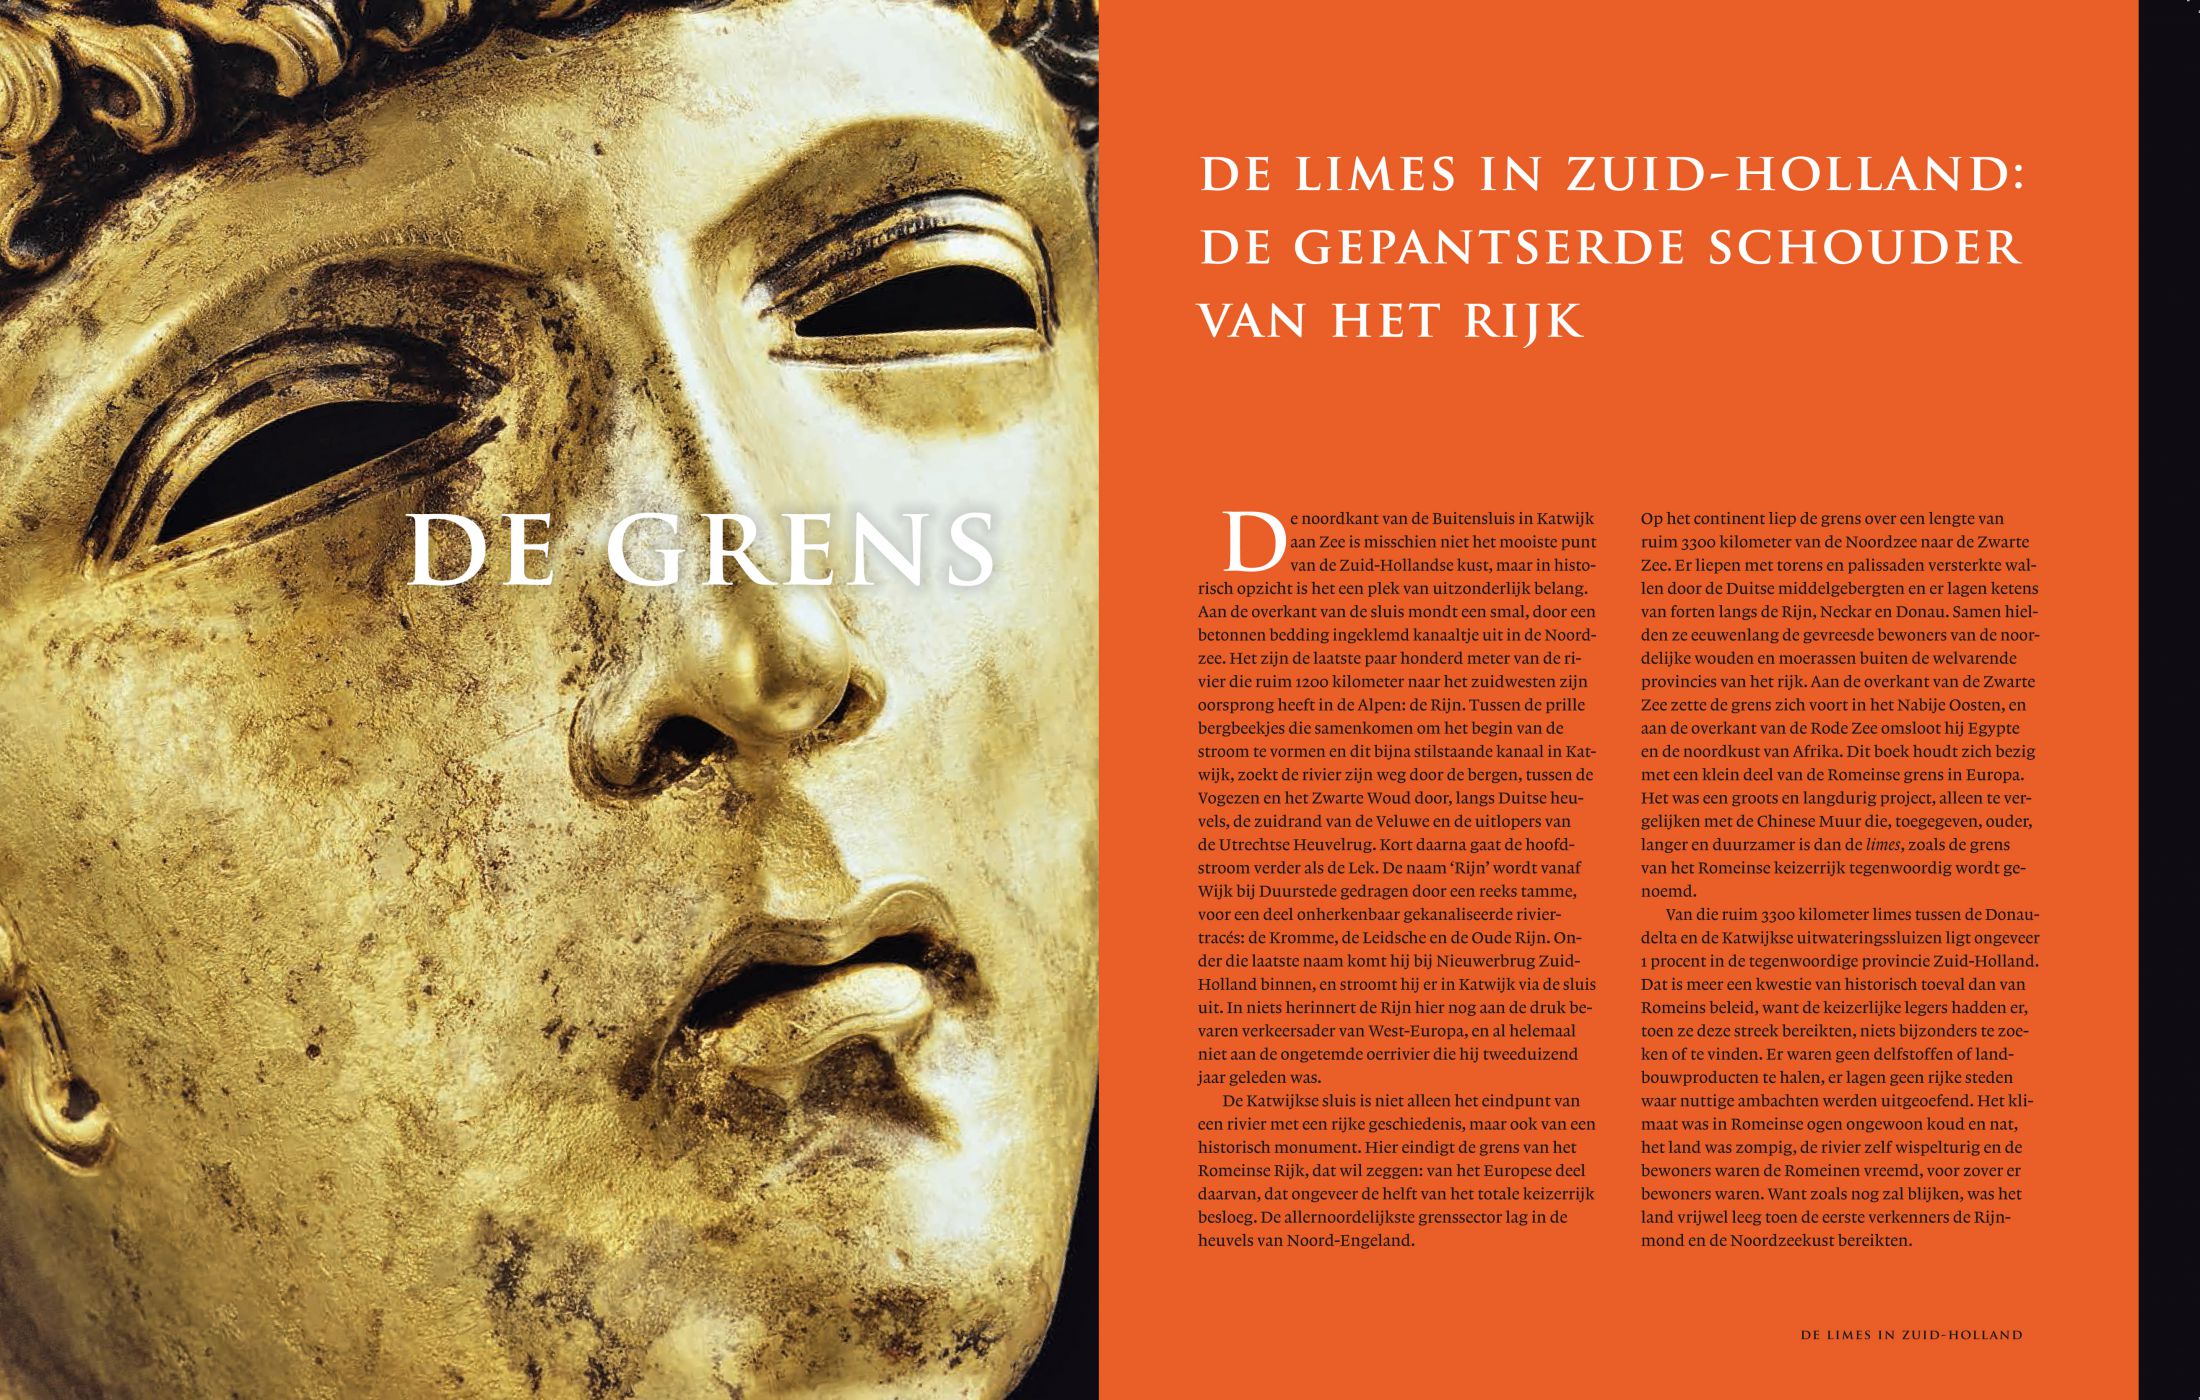 Inkijkexemplaar van het boek: <em>Grens van het Romeinse Rijk. De limes in Zuid-Holland</em> - © Uitgeverij Matrijs